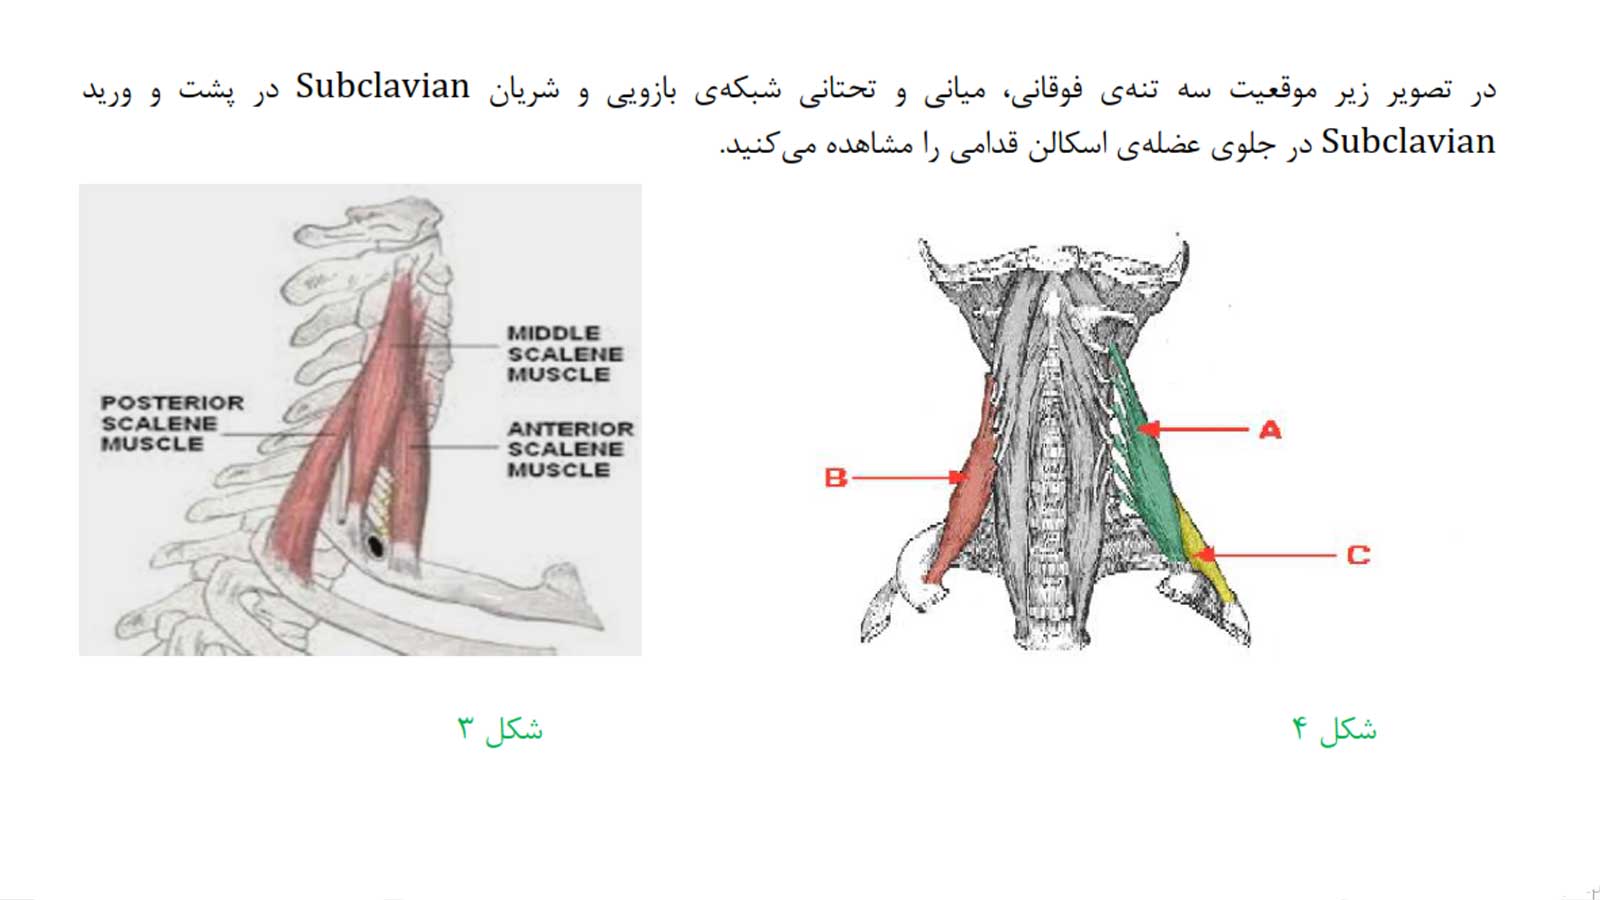 جزوه کامل سر و گردن د.ع.پ.شهیدبهشتی | کاملا رنگی